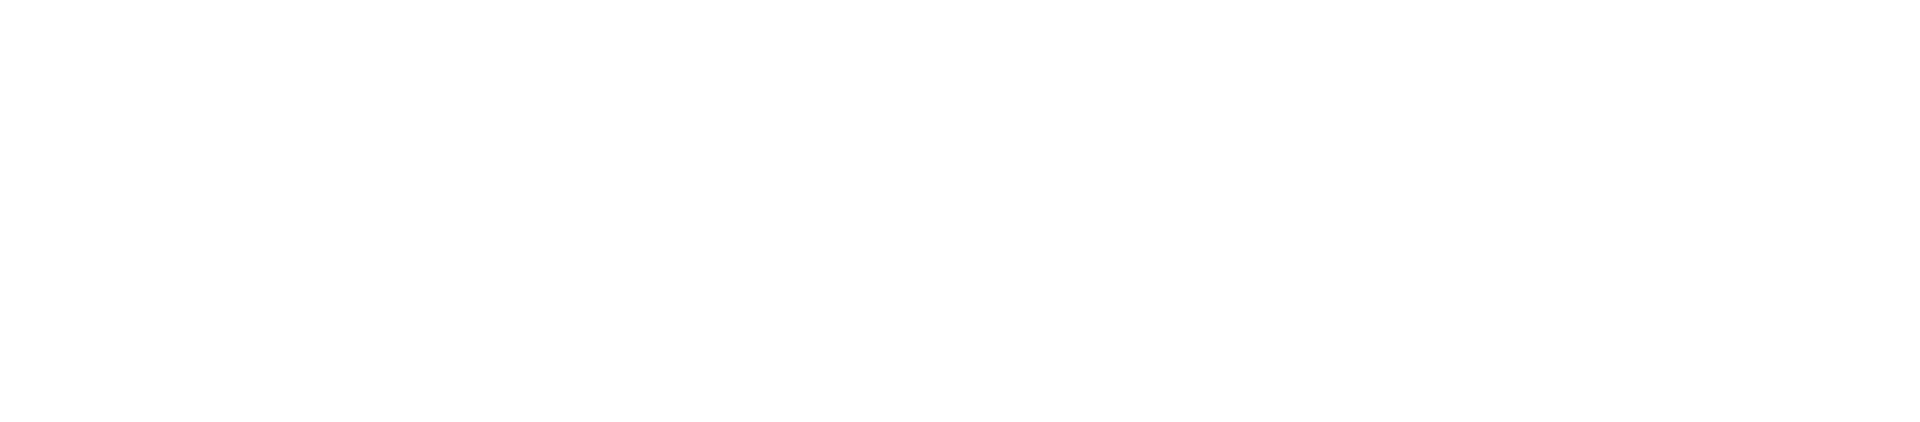 TheBlackFriday.com